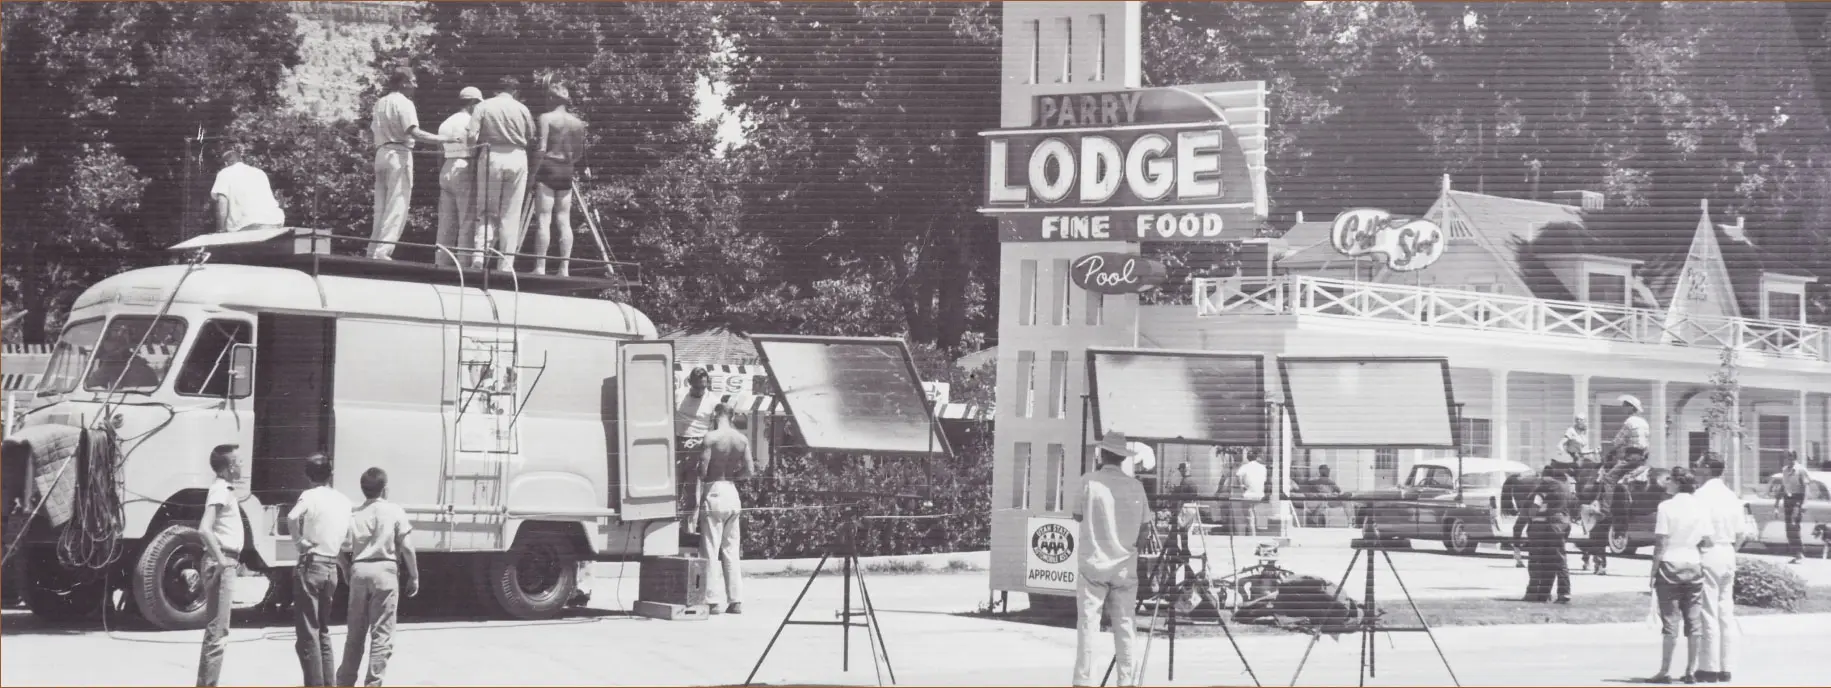 Parry Lodge Film Set